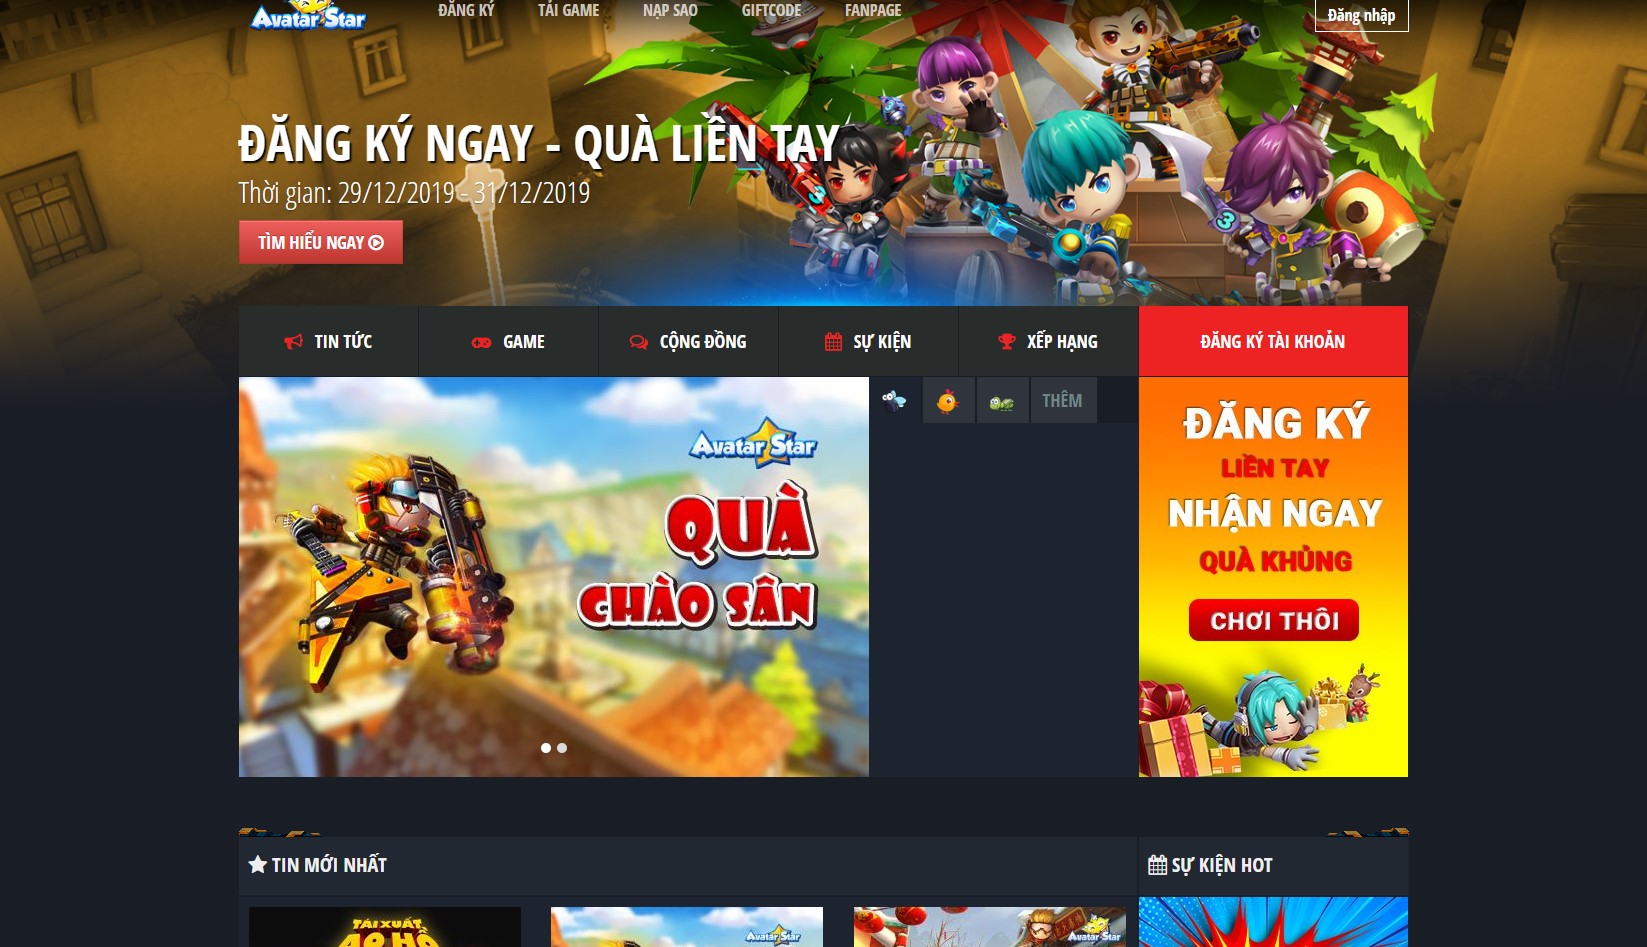 Avatar Star Online chính thức trở lại Việt Nam với tính năng “giật, lag” vì  quá